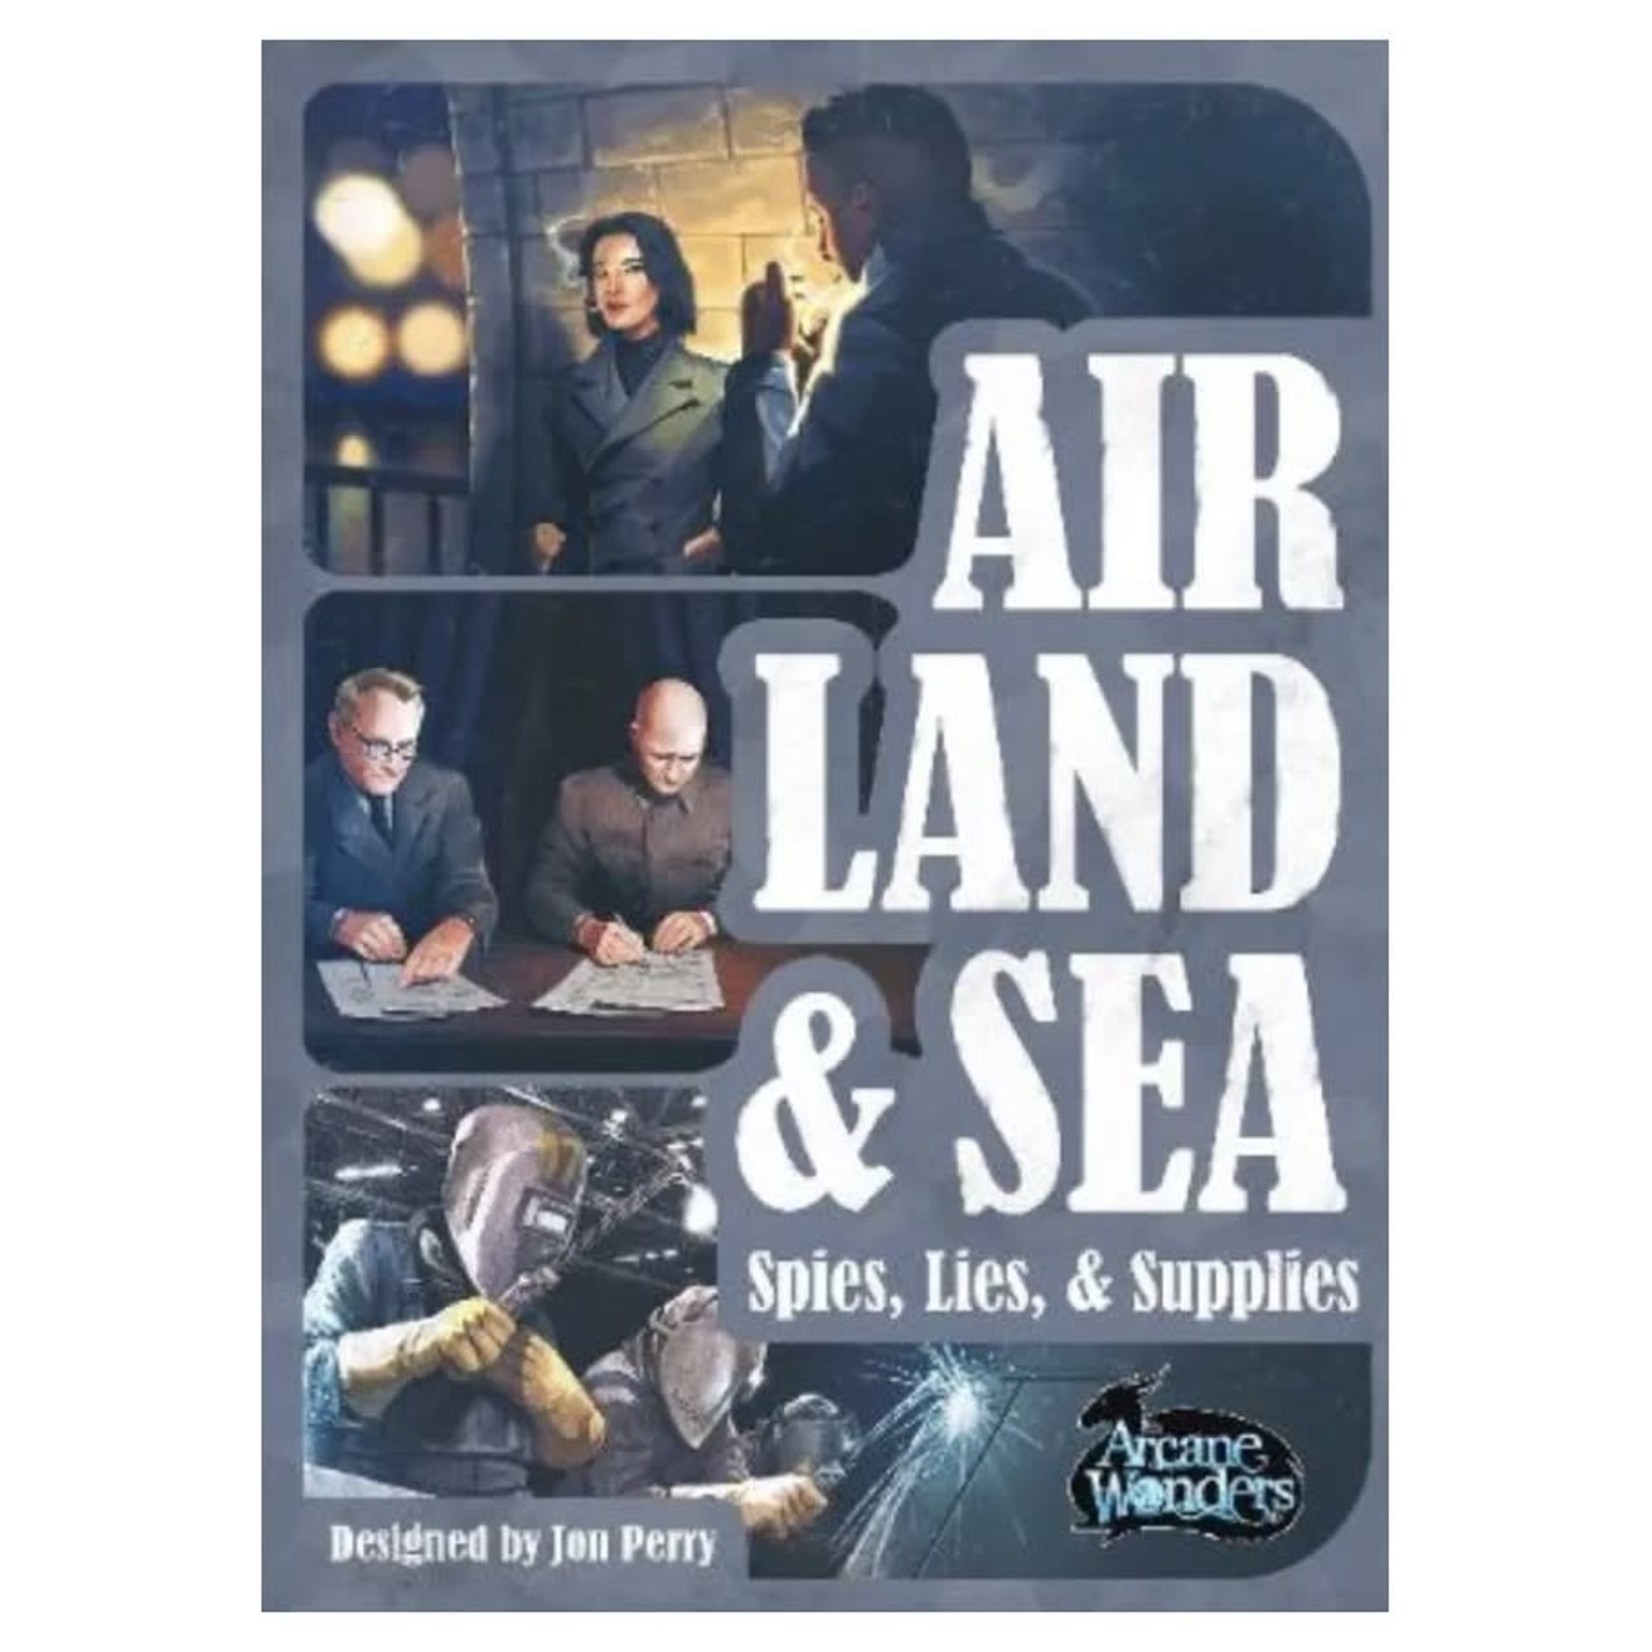 Arcane Wonders Air, Land & Sea: Spies, Lies, & Supplies